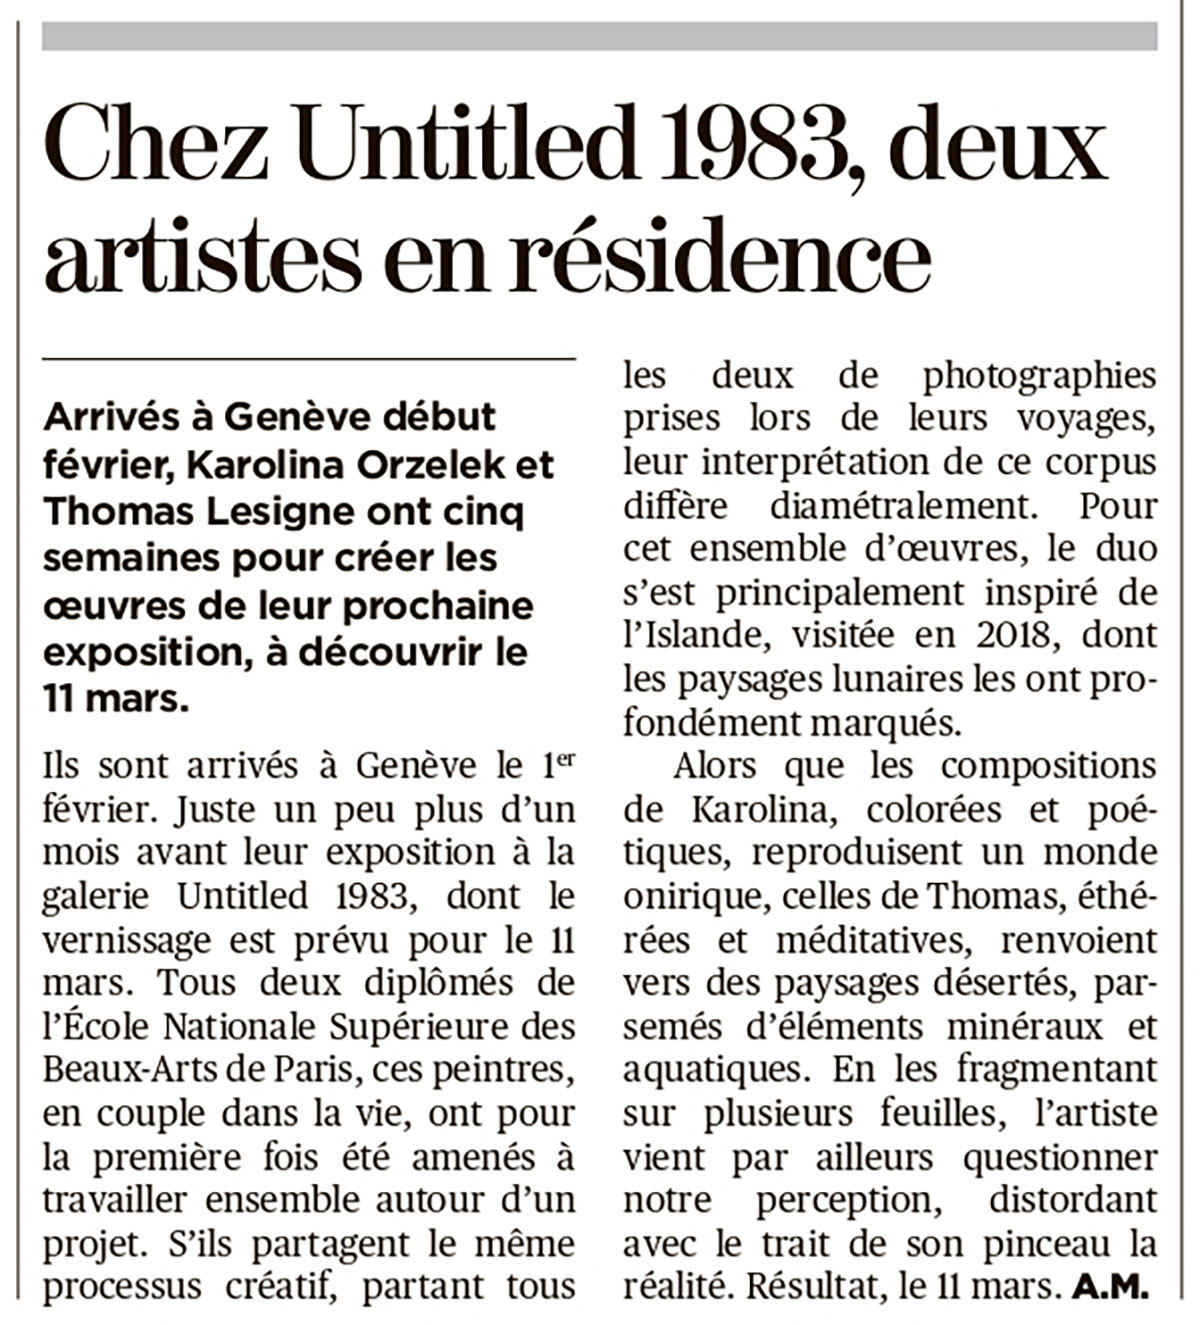 "Chez Untitled 1983, deux artistes en résidence", A. M., Tribune des arts - Tribune de Genève, March 4, 2021